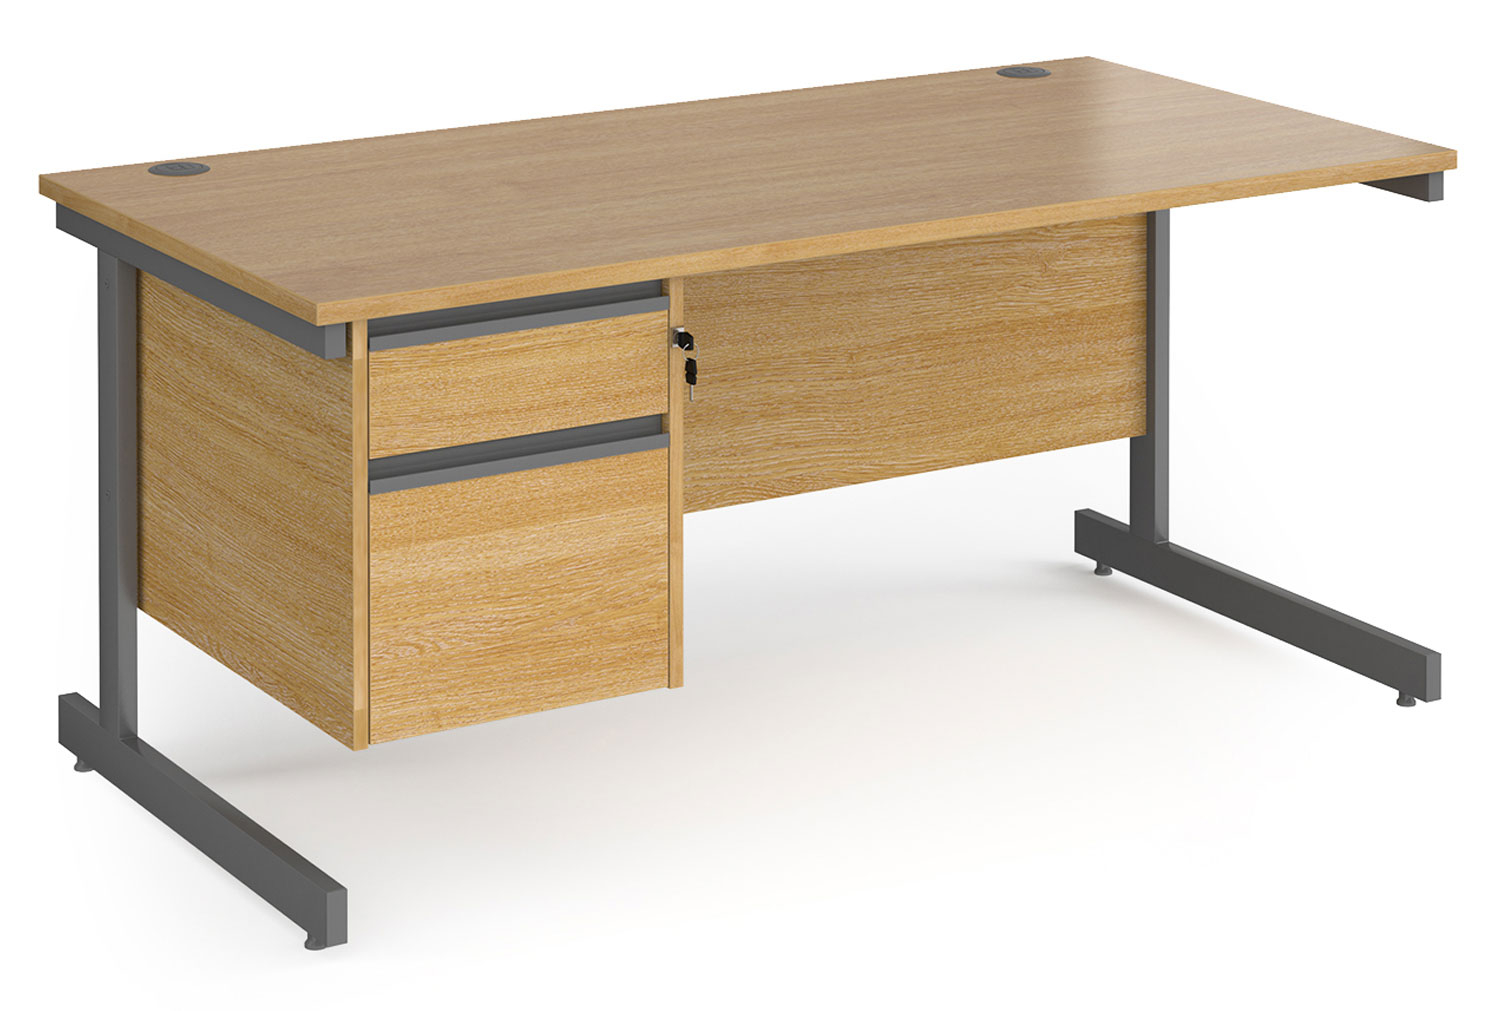 Value Line Classic+ Rectangular C-Leg Office Desk 2 Drawers (Graphite Leg), 160wx80dx73h (cm), Oak, Express Delivery